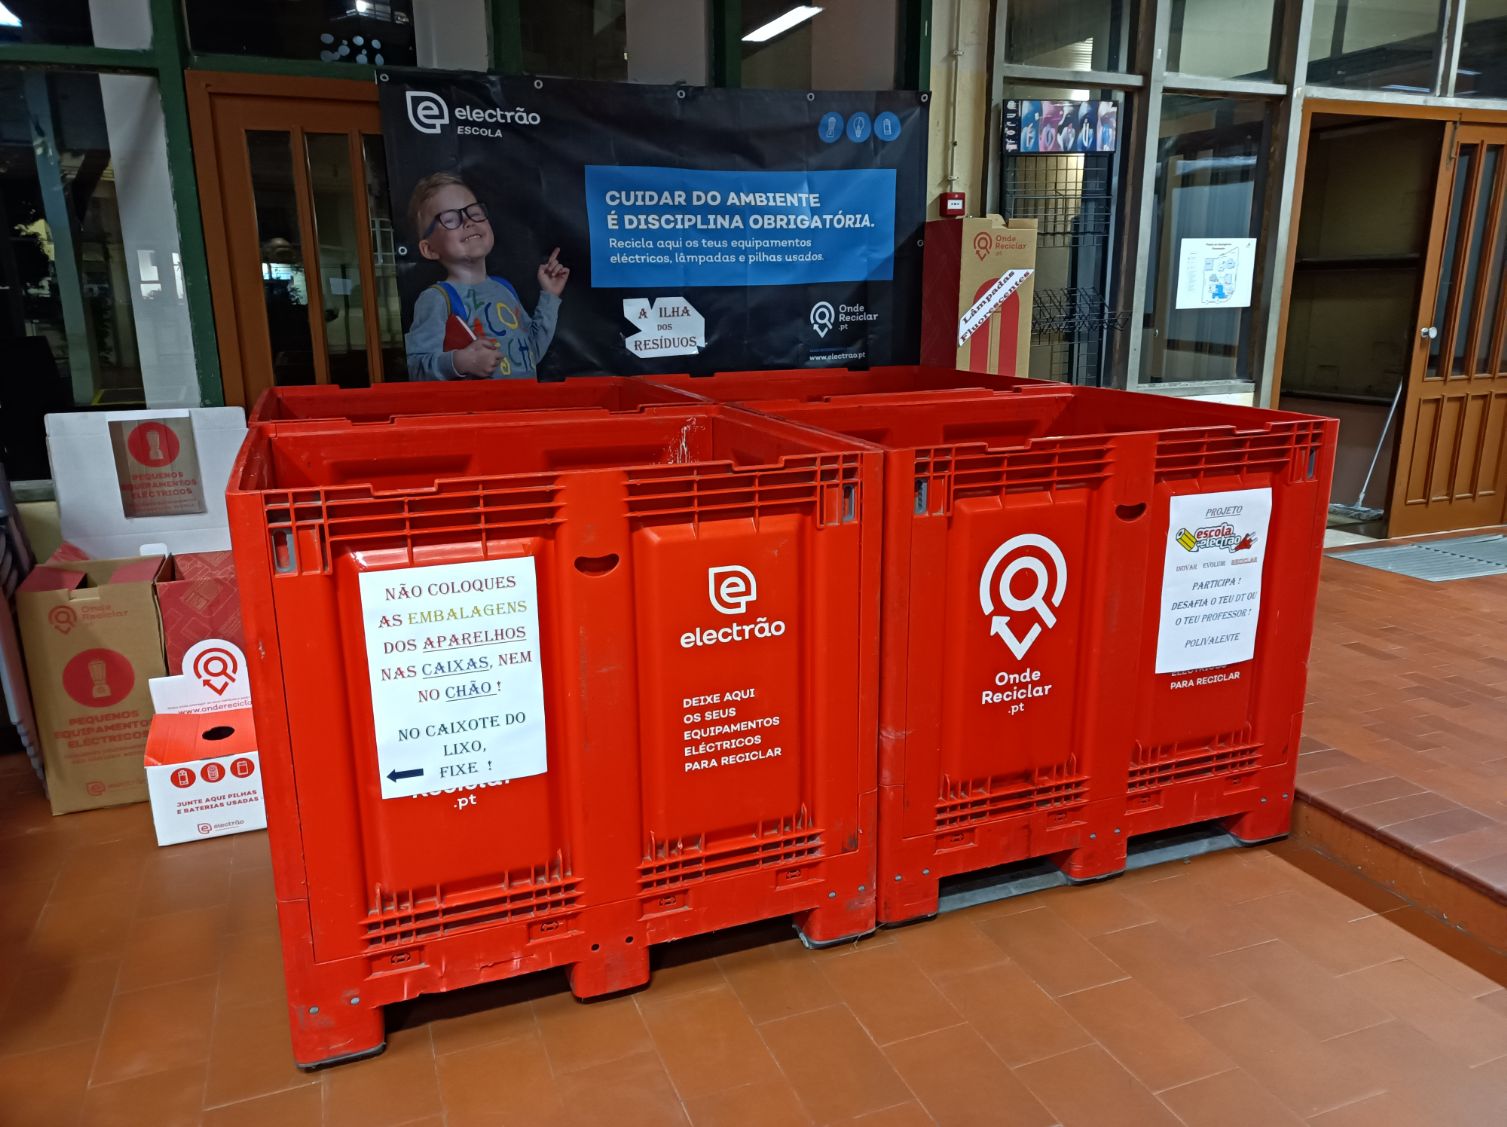 Há 56 escolas no distrito de Faro a recolher pilhas, lâmpadas e equipamentos elétricos para reciclagem